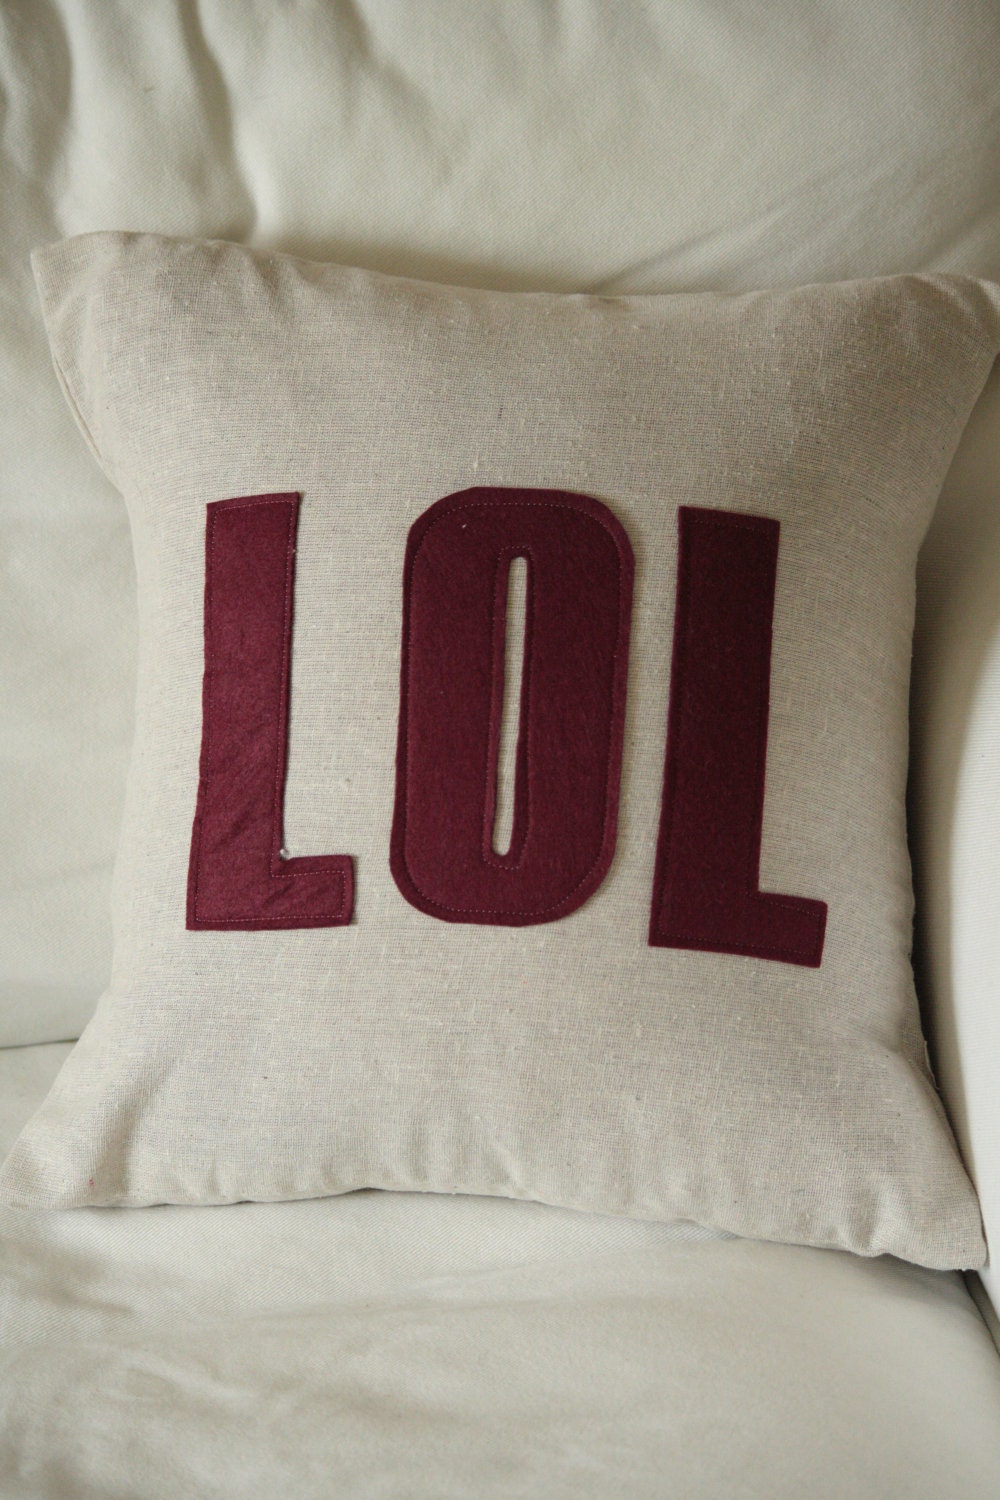 Lol Pillow